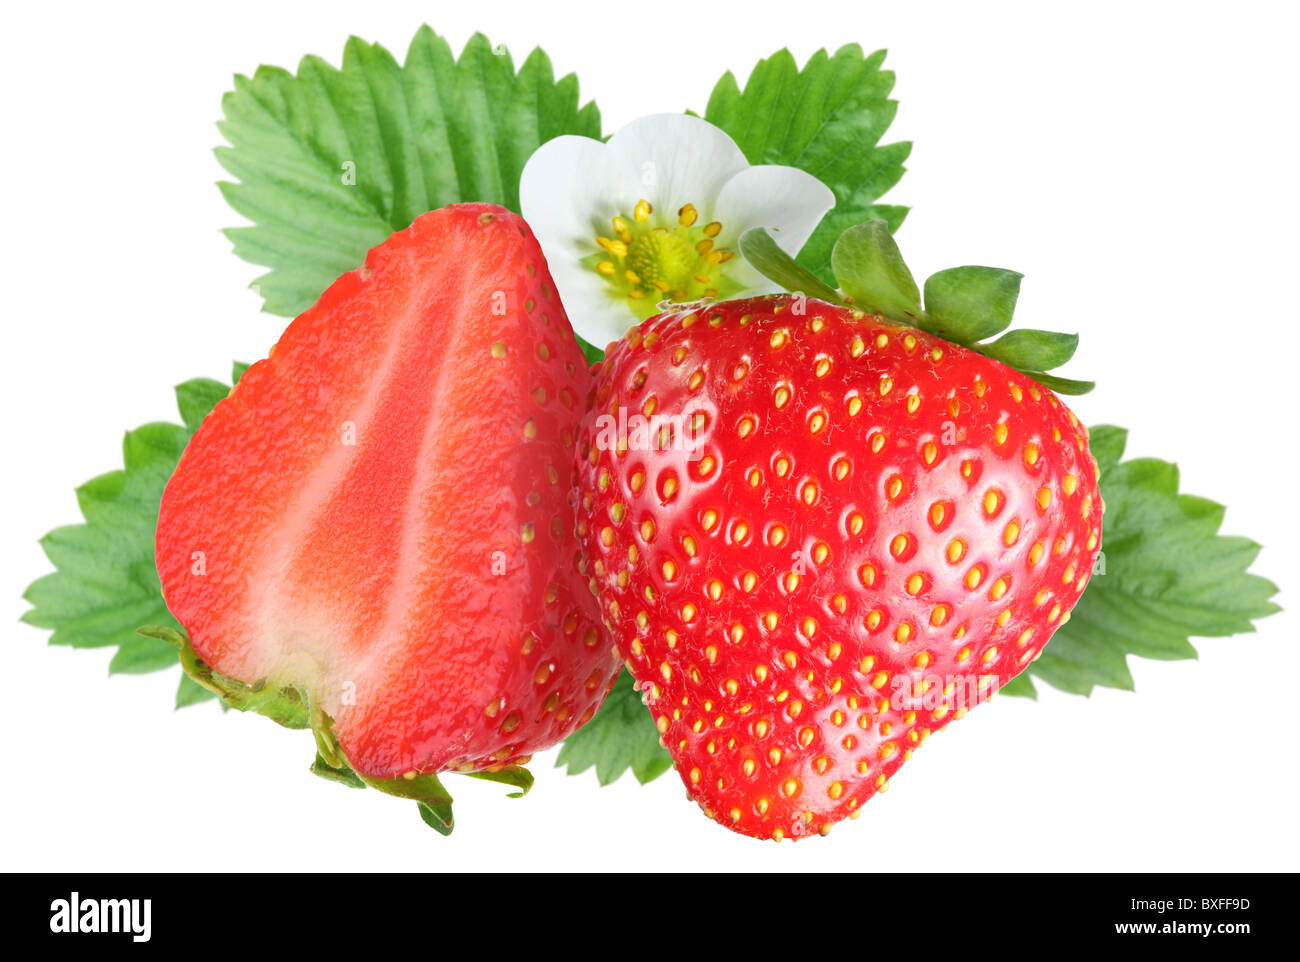 Verführerische Erdbeeren mit Blättern und Blumen. Datei enthält eine Beschneidungspfade. Stockfoto